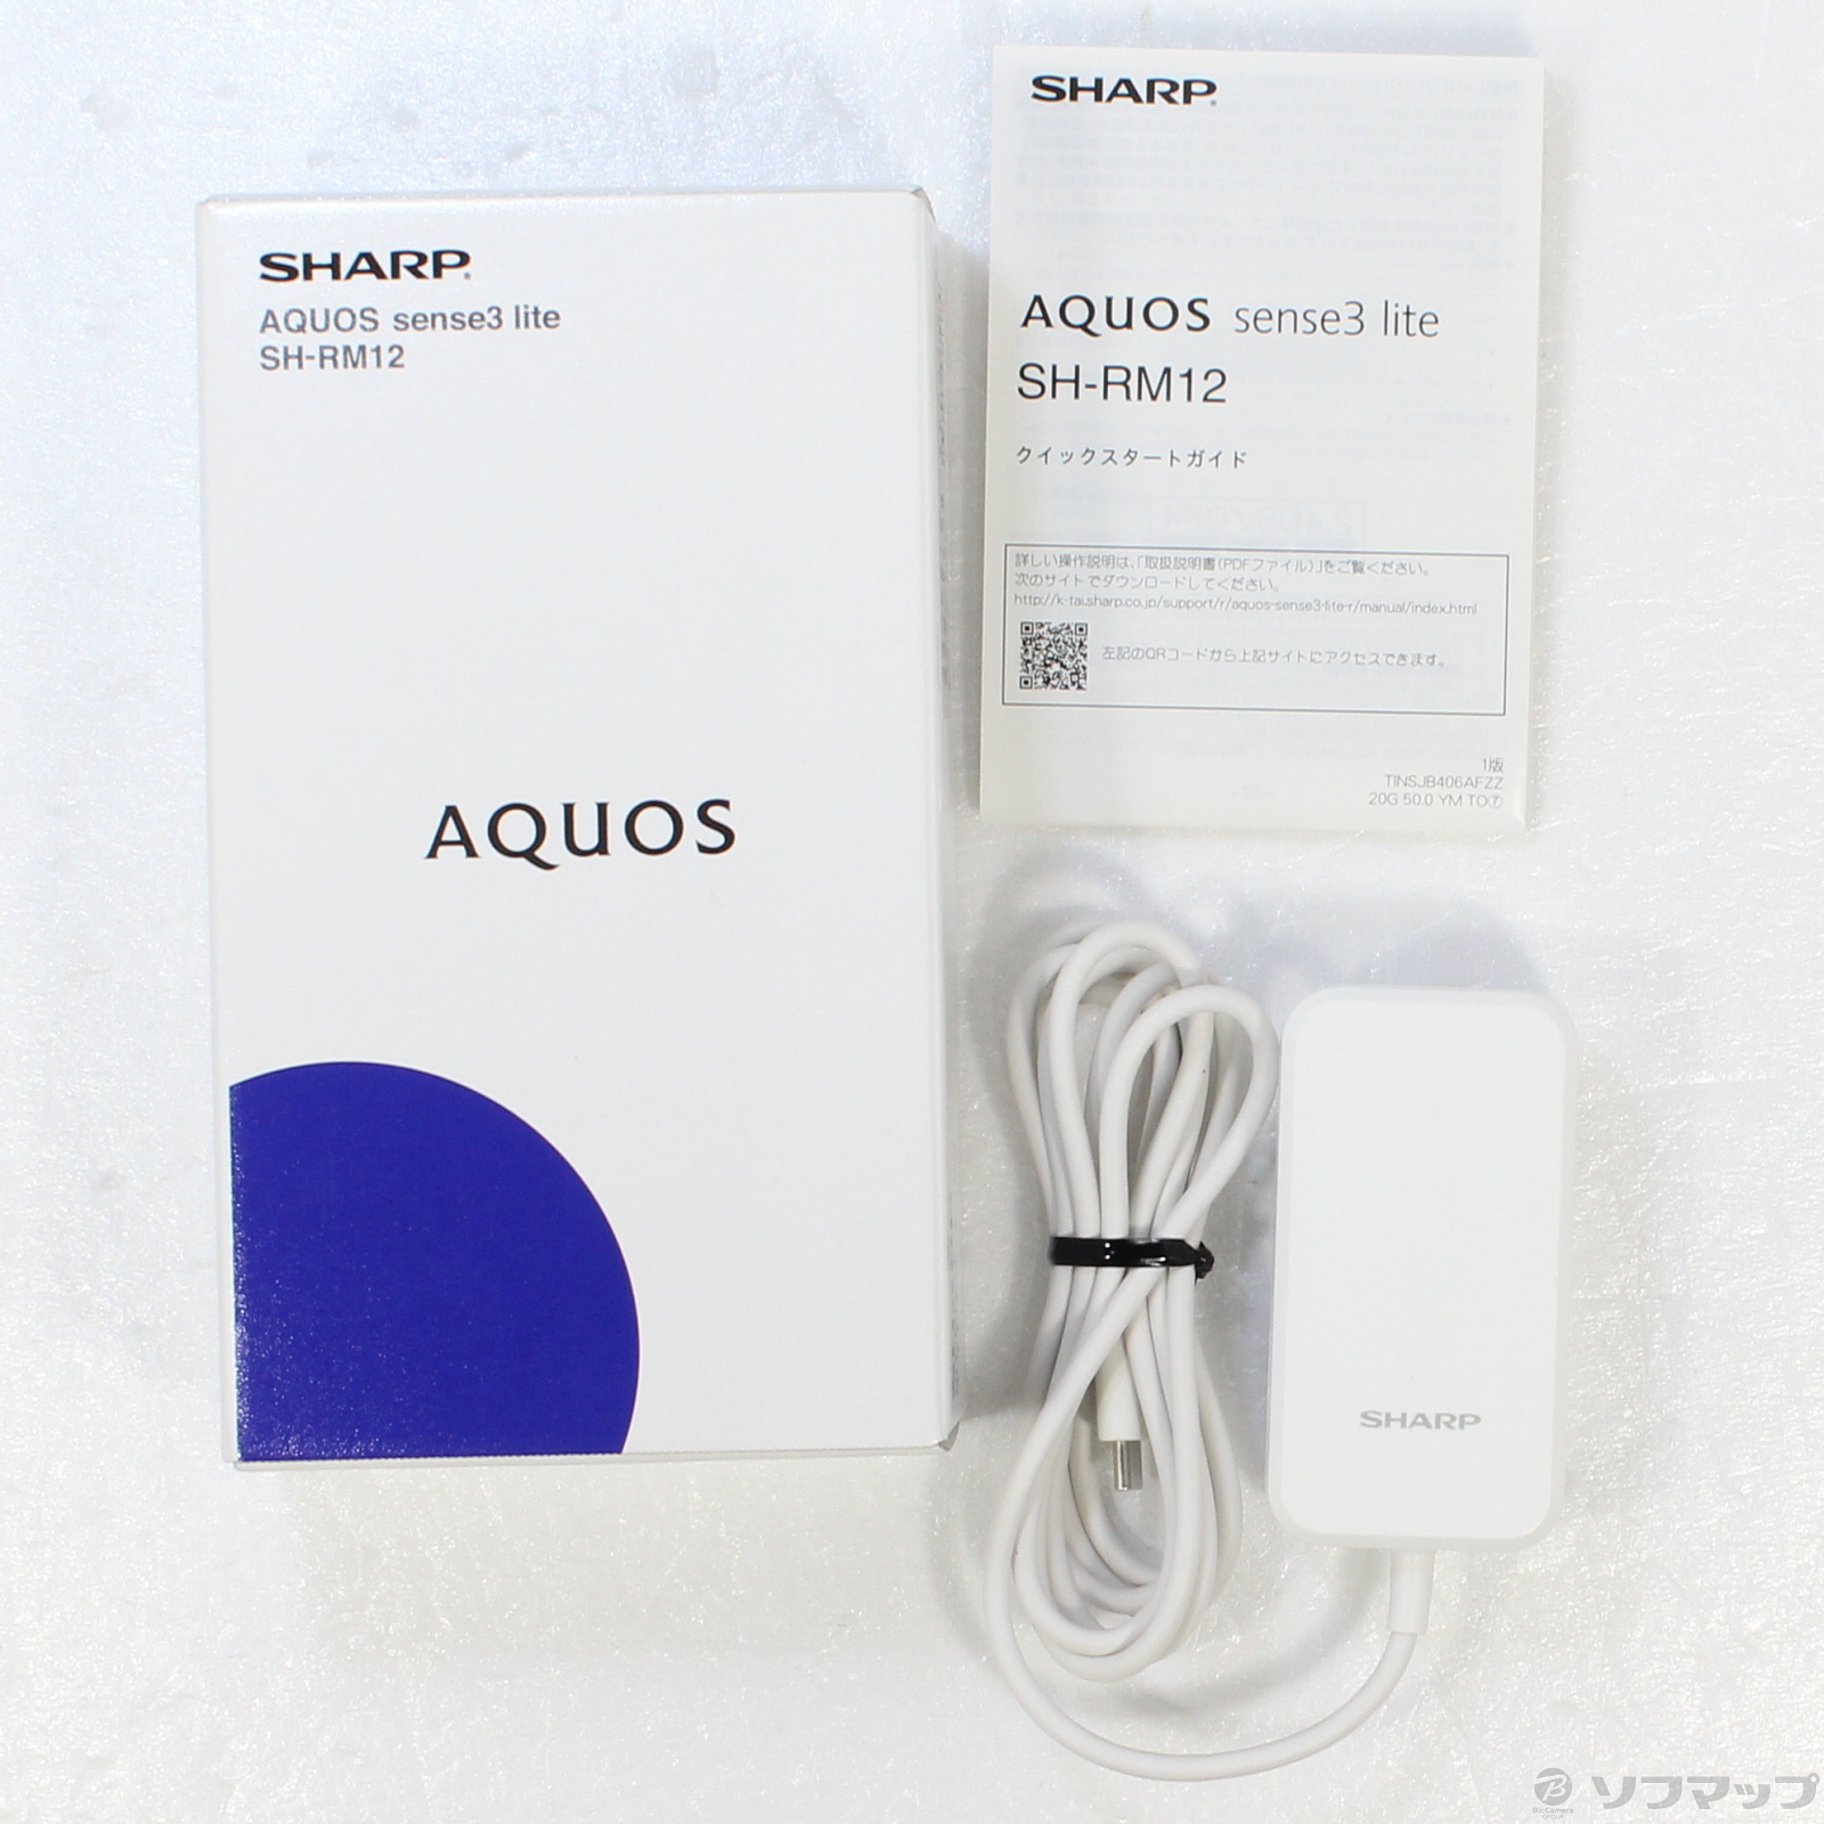 中古】AQUOS sense3 lite 楽天版 64GB ライトカッパー SH-RM12 SIM